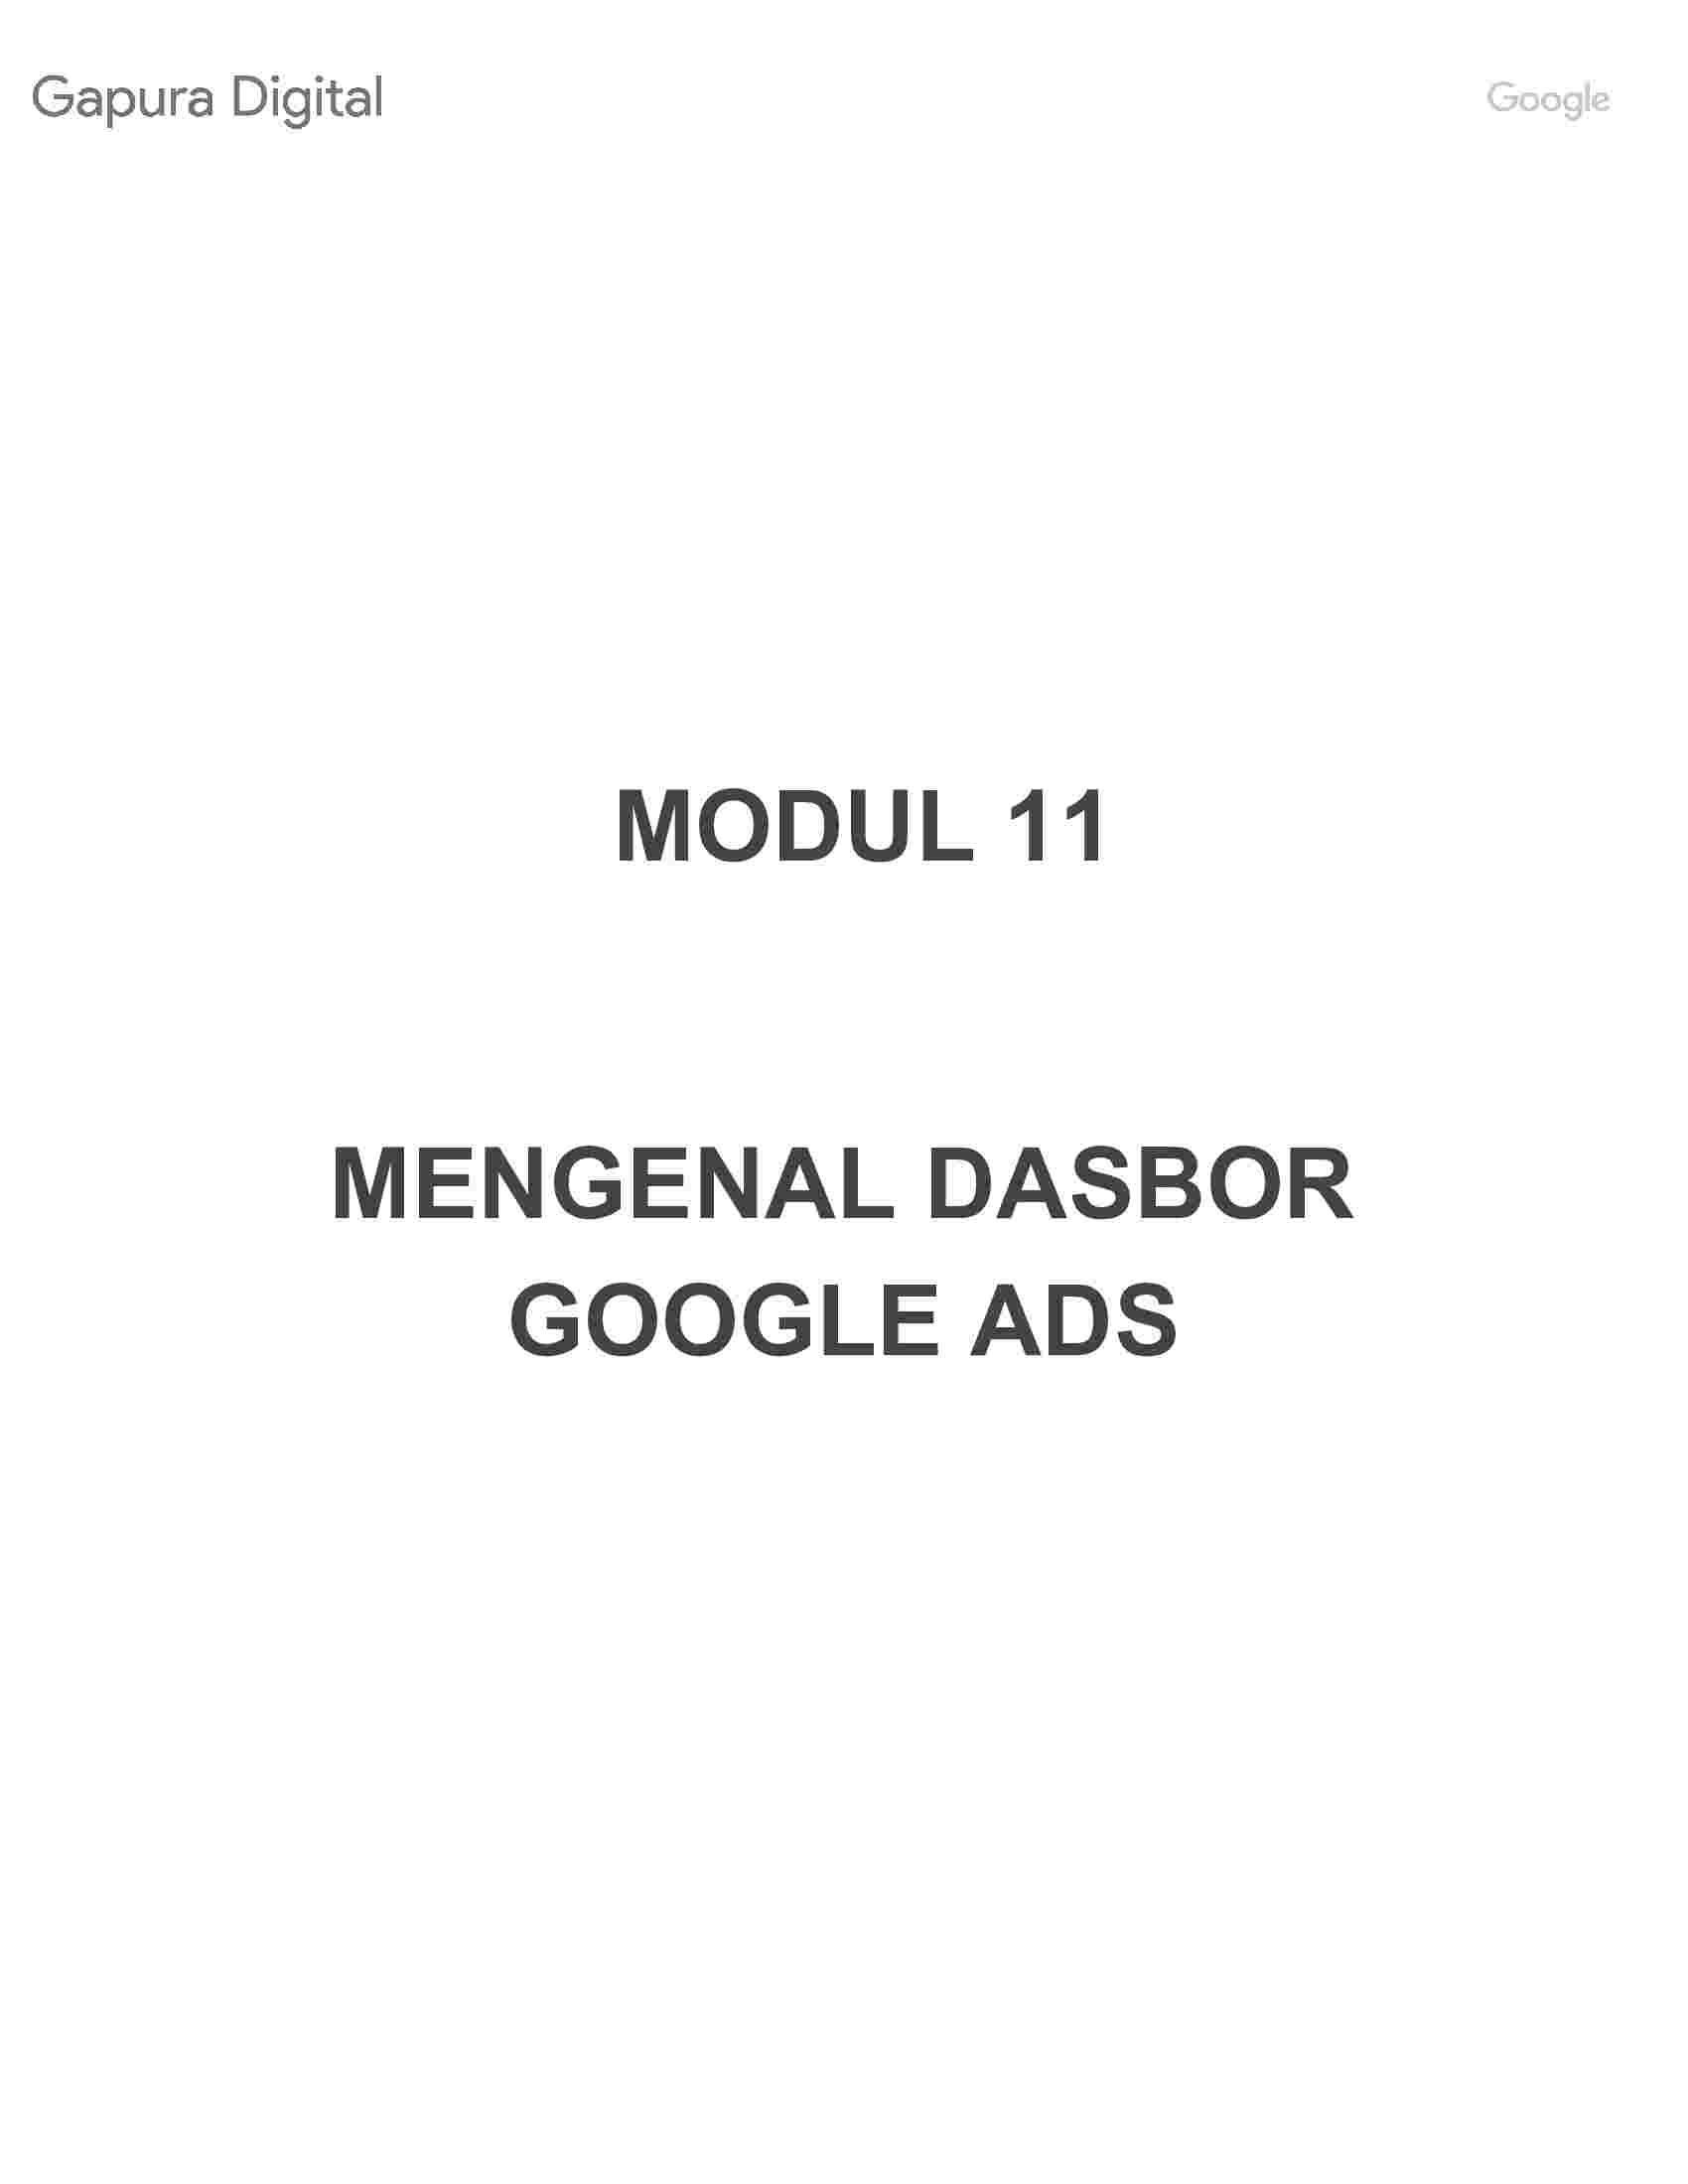 11.hands-out-modul-11-mengenal-dasbor-google-ads-gapura-digital